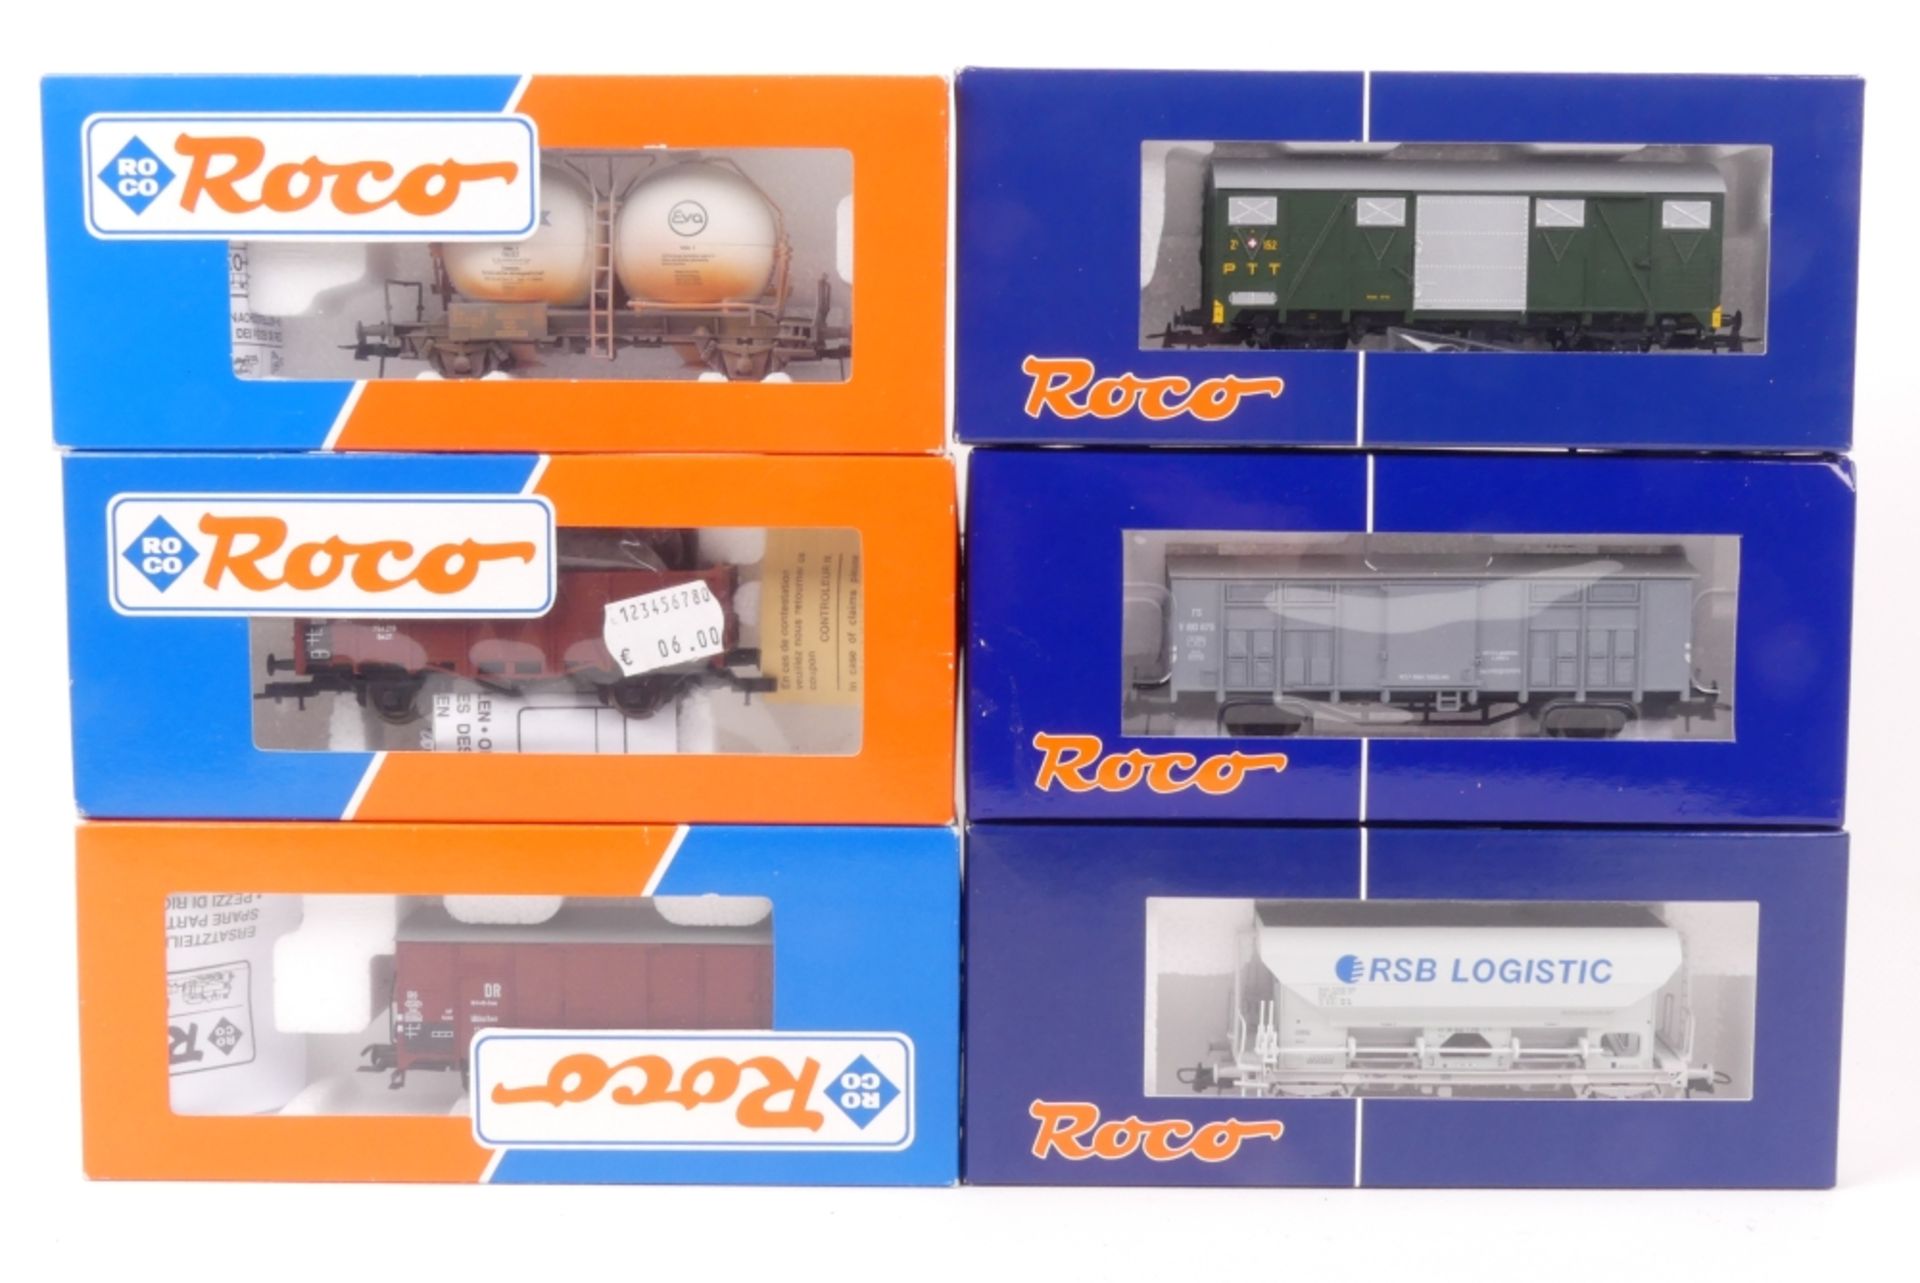 Sechs Roco GüterwagenSechs Roco Güterwagen, DR, 43145-5, braun, DB, 4873, Silo, geal